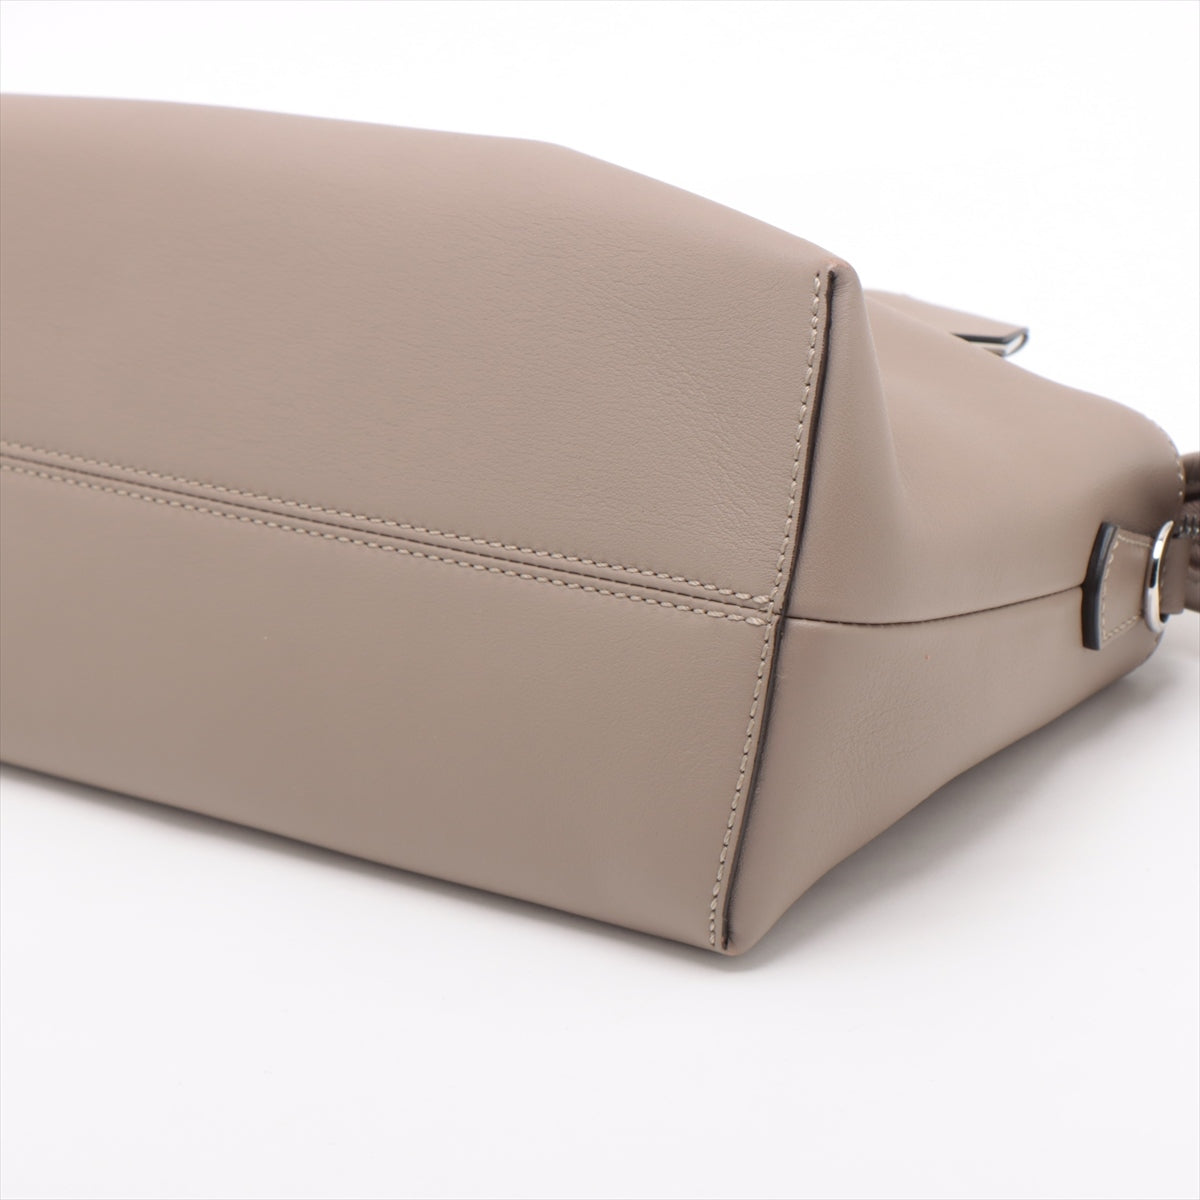 Fendi By the Way Medium Leather 2way handbag Beige 8BL146